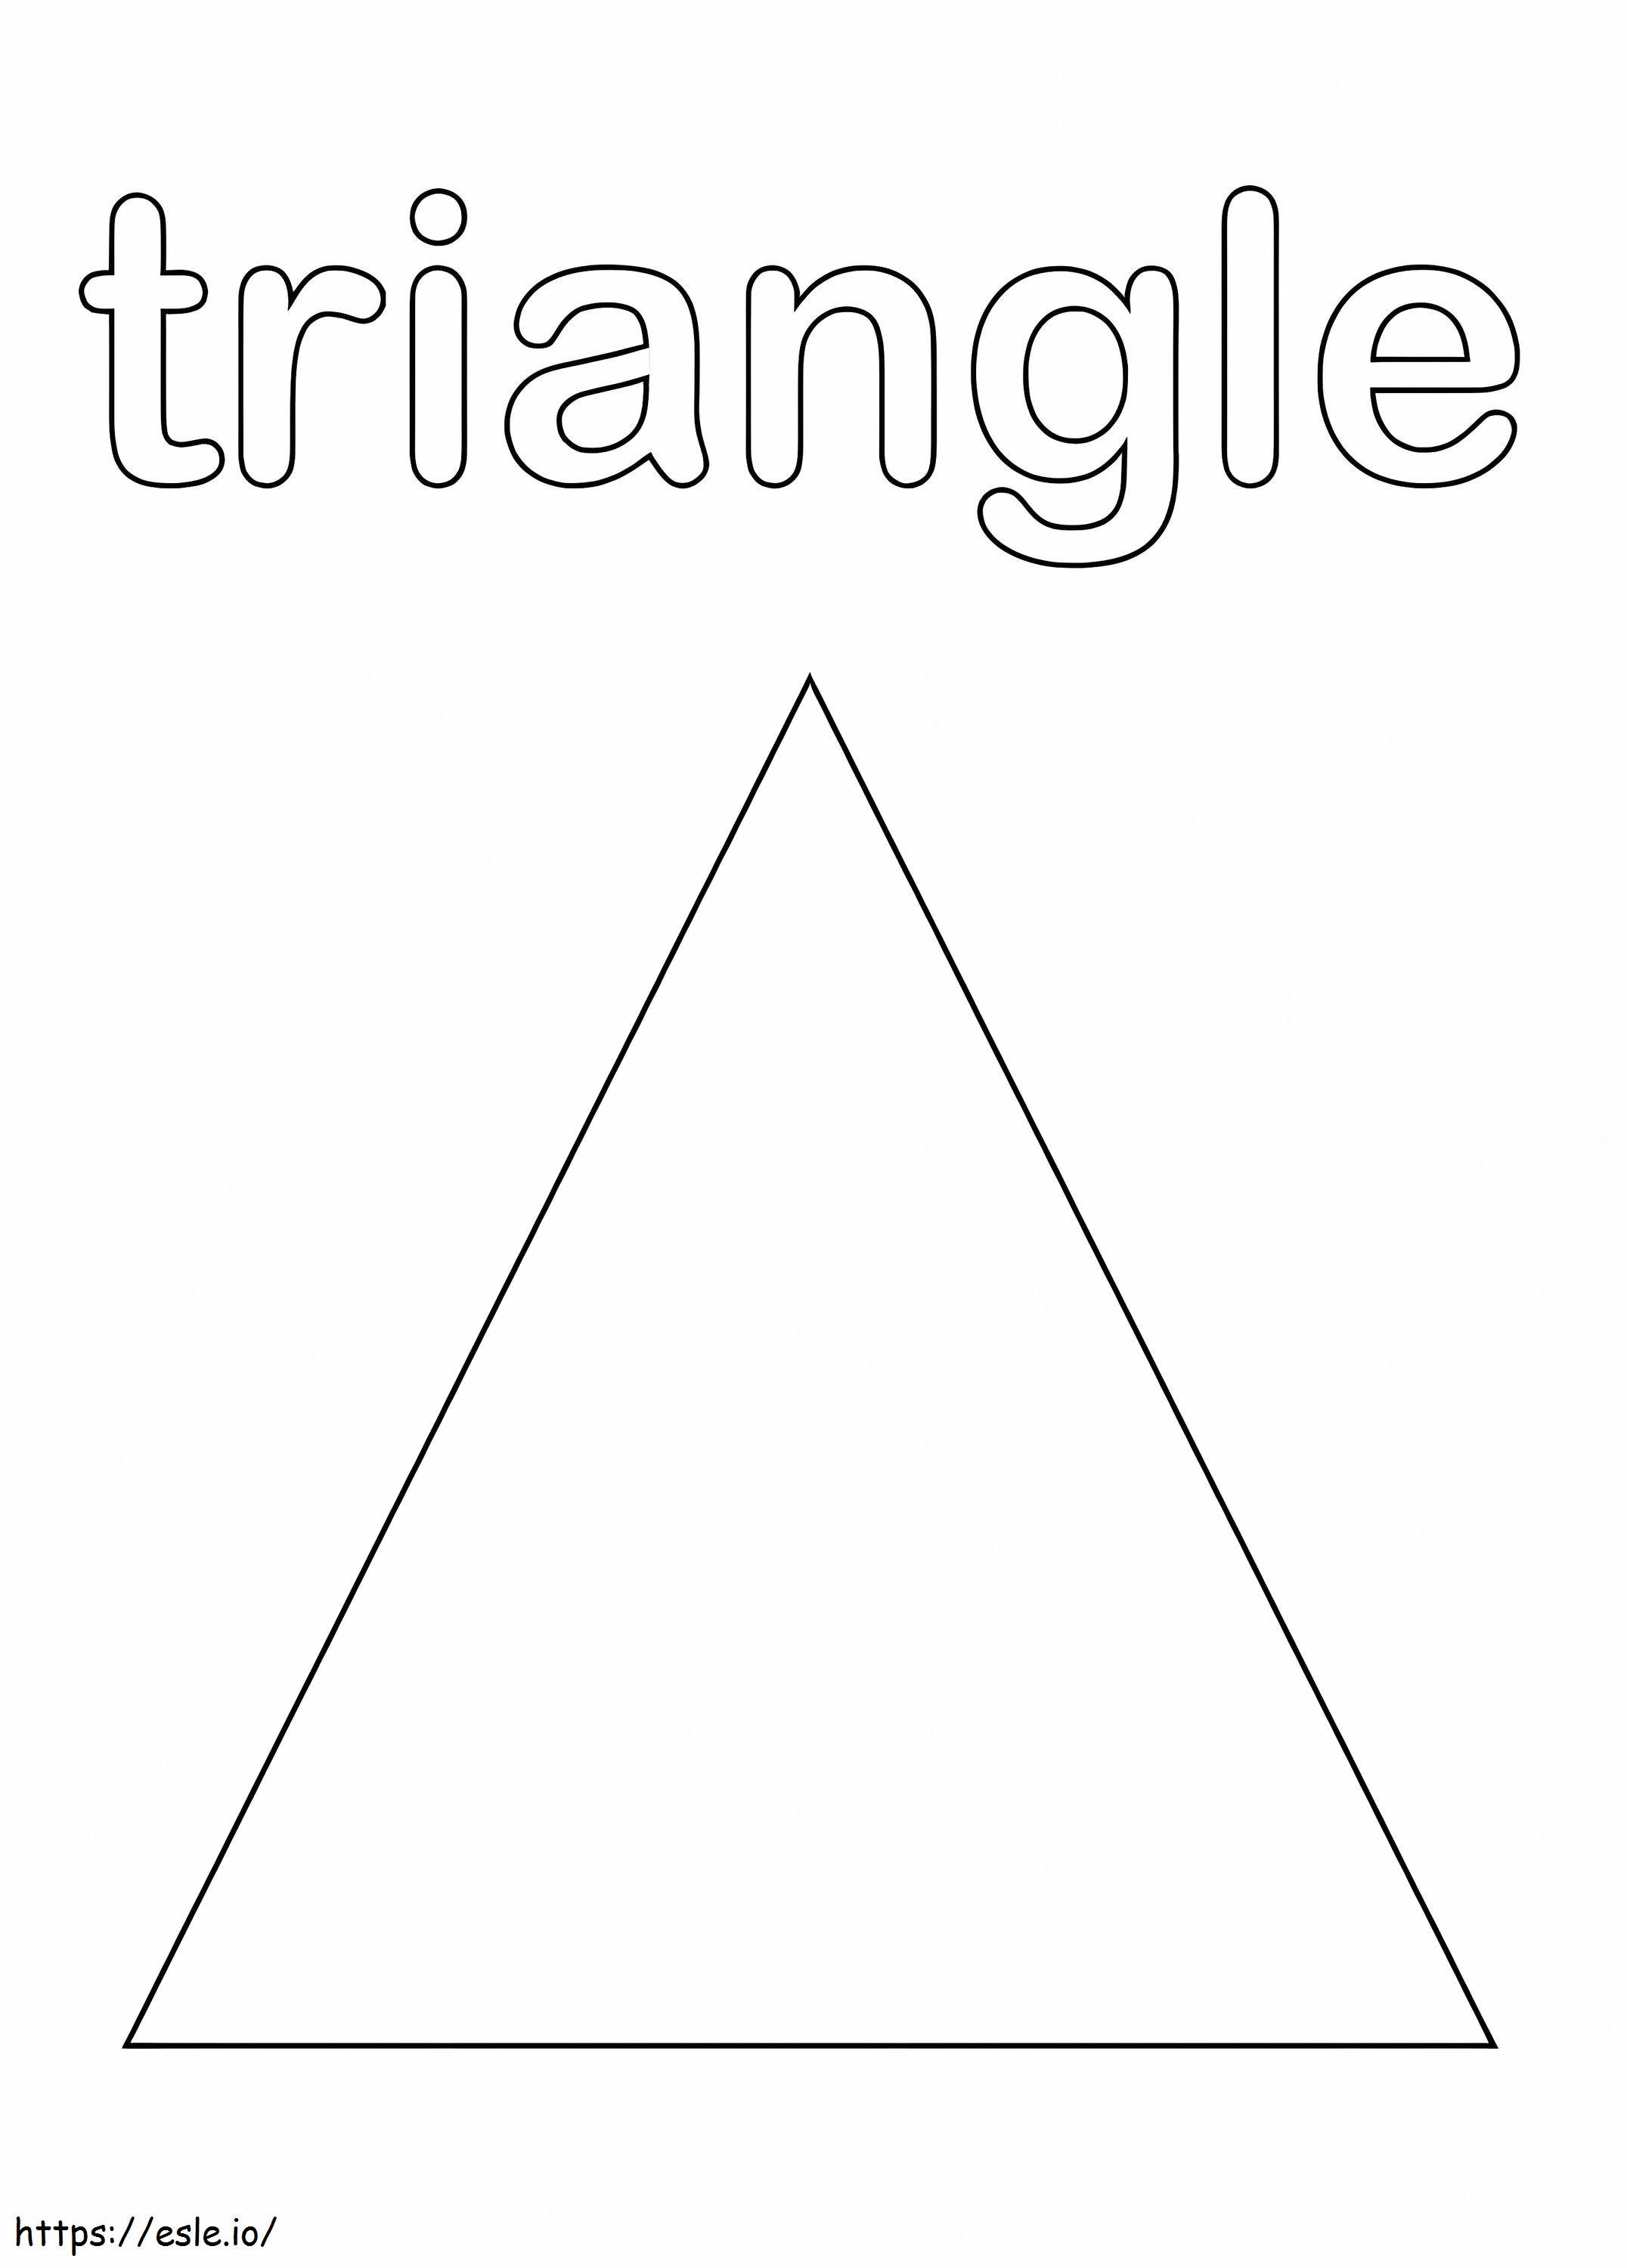 Ein Dreieck ausmalbilder